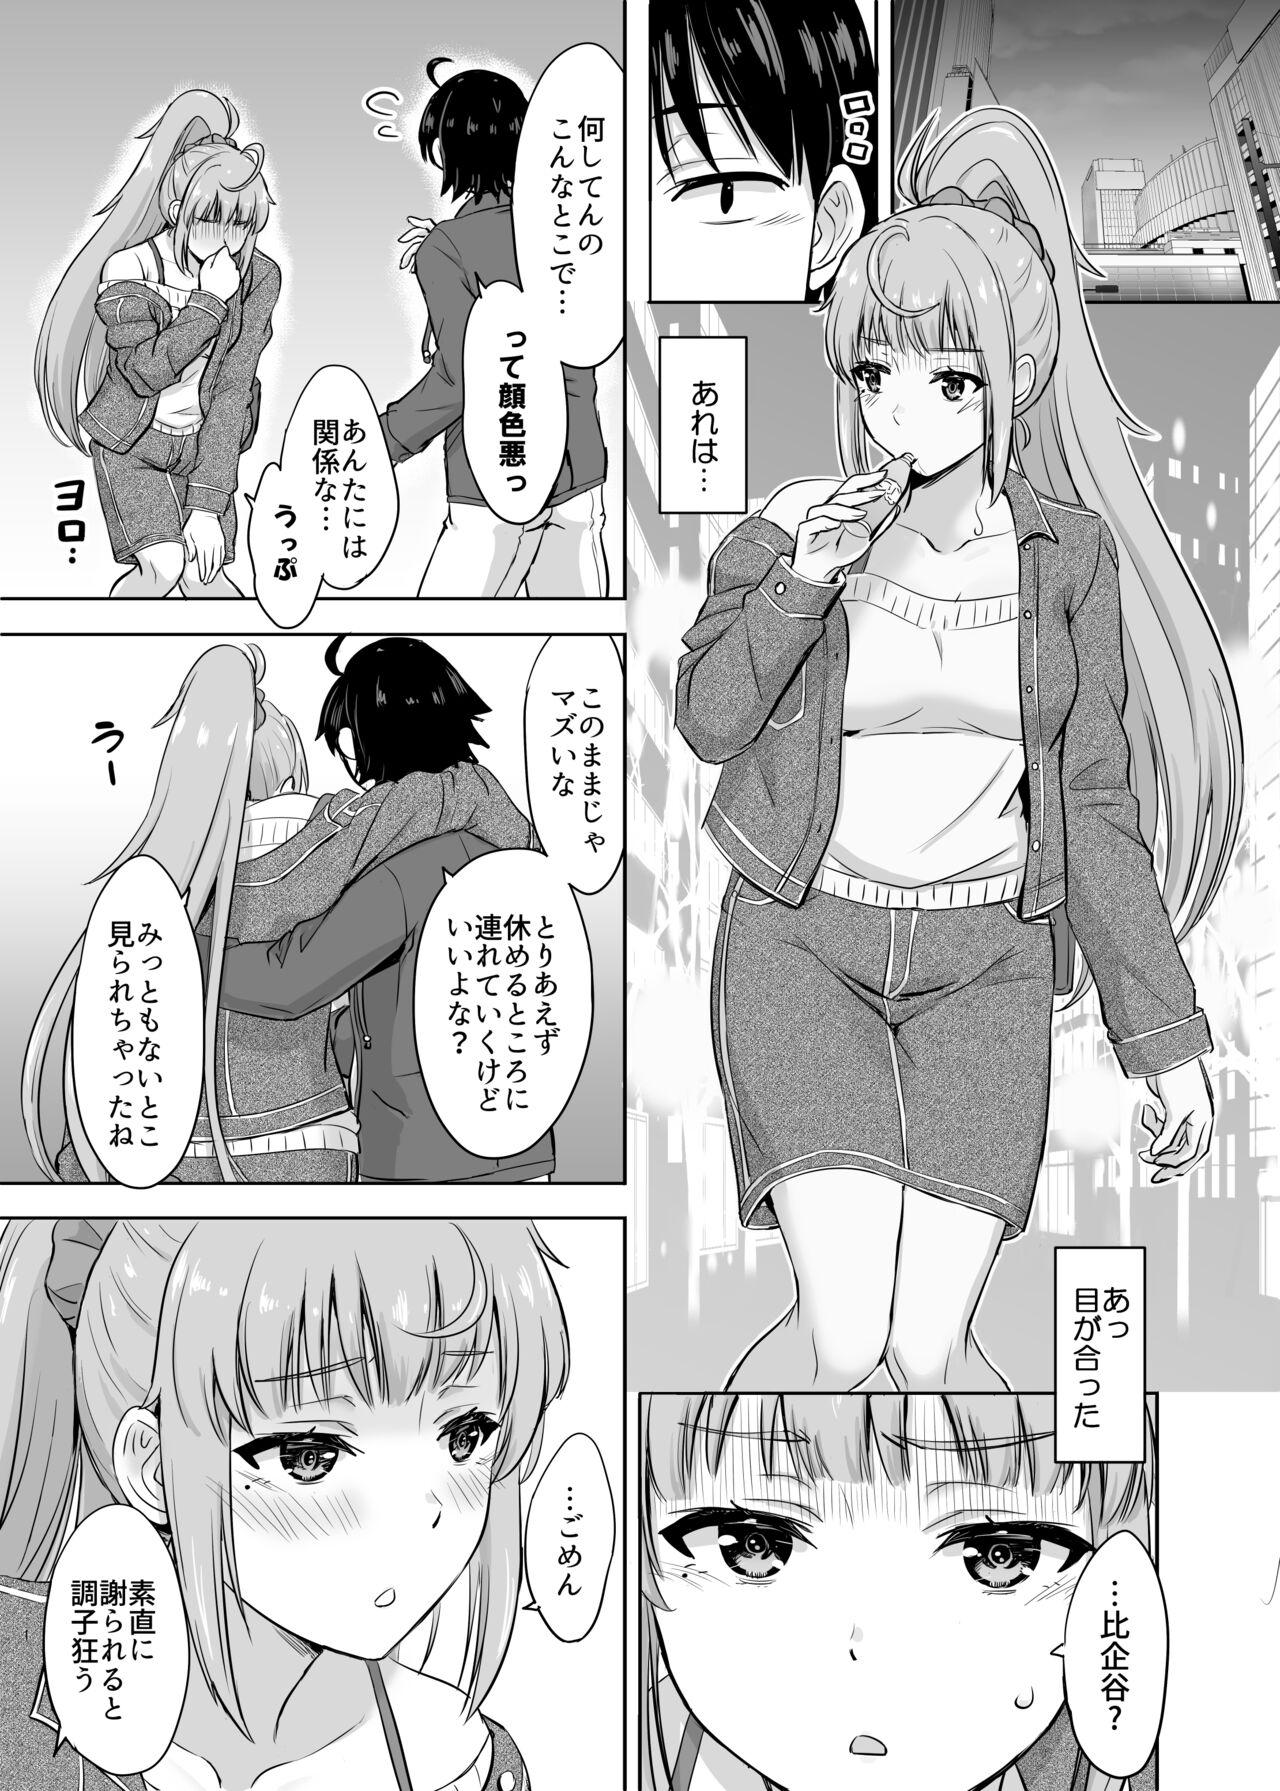 Office Sex Ashi-san Saki Saki Manga - Yahari ore no seishun love come wa machigatteiru Gay Public - Picture 1